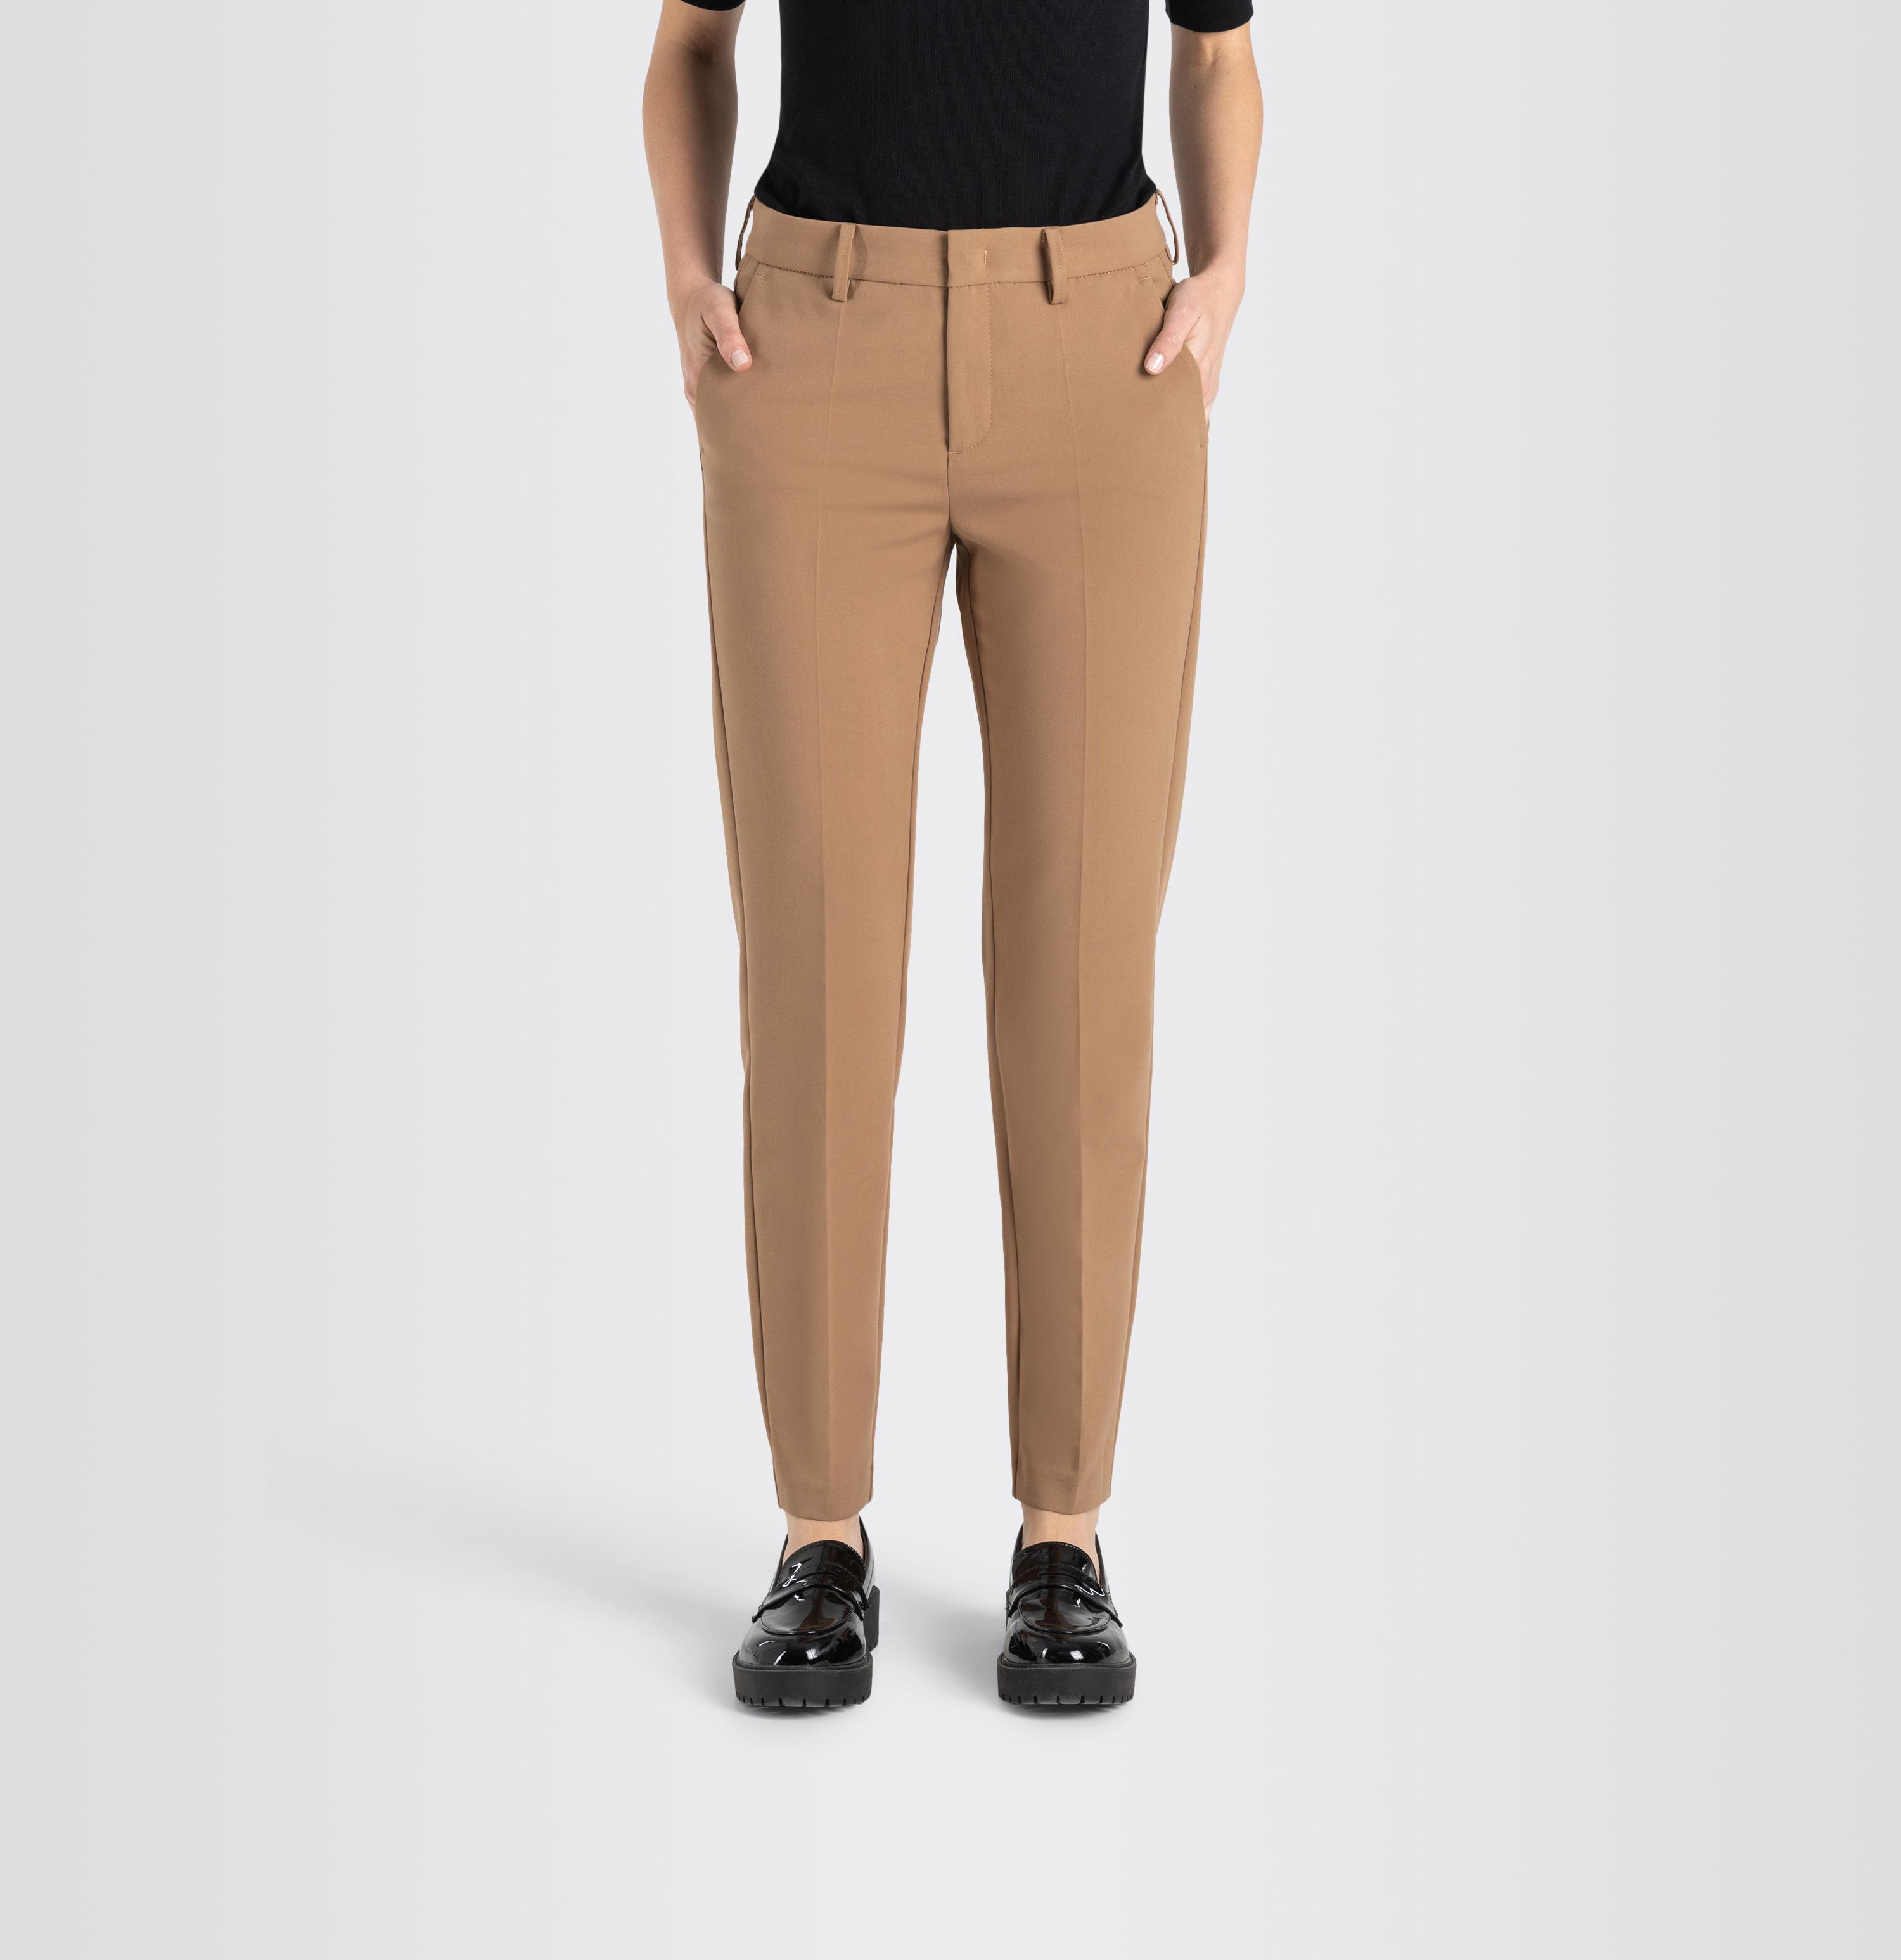 Women Pants, Chia, Techno Wool, | Jeans GR Shop brown 255 MAC 